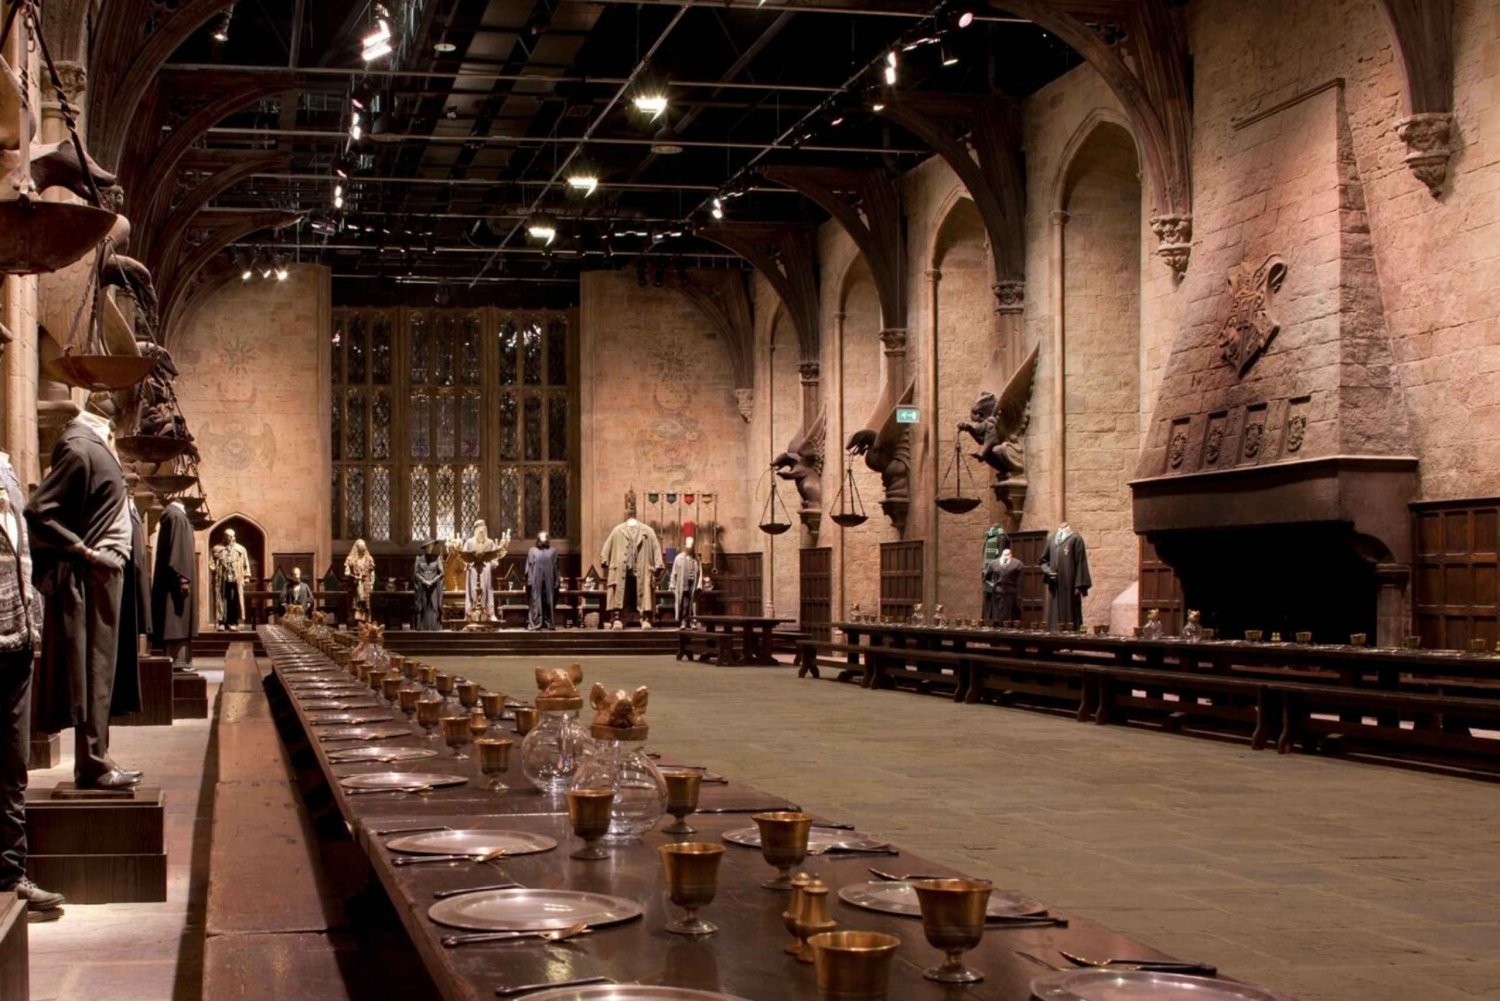 Vanuit Londen: dagtrip naar de Harry Potter-studio's en Oxford